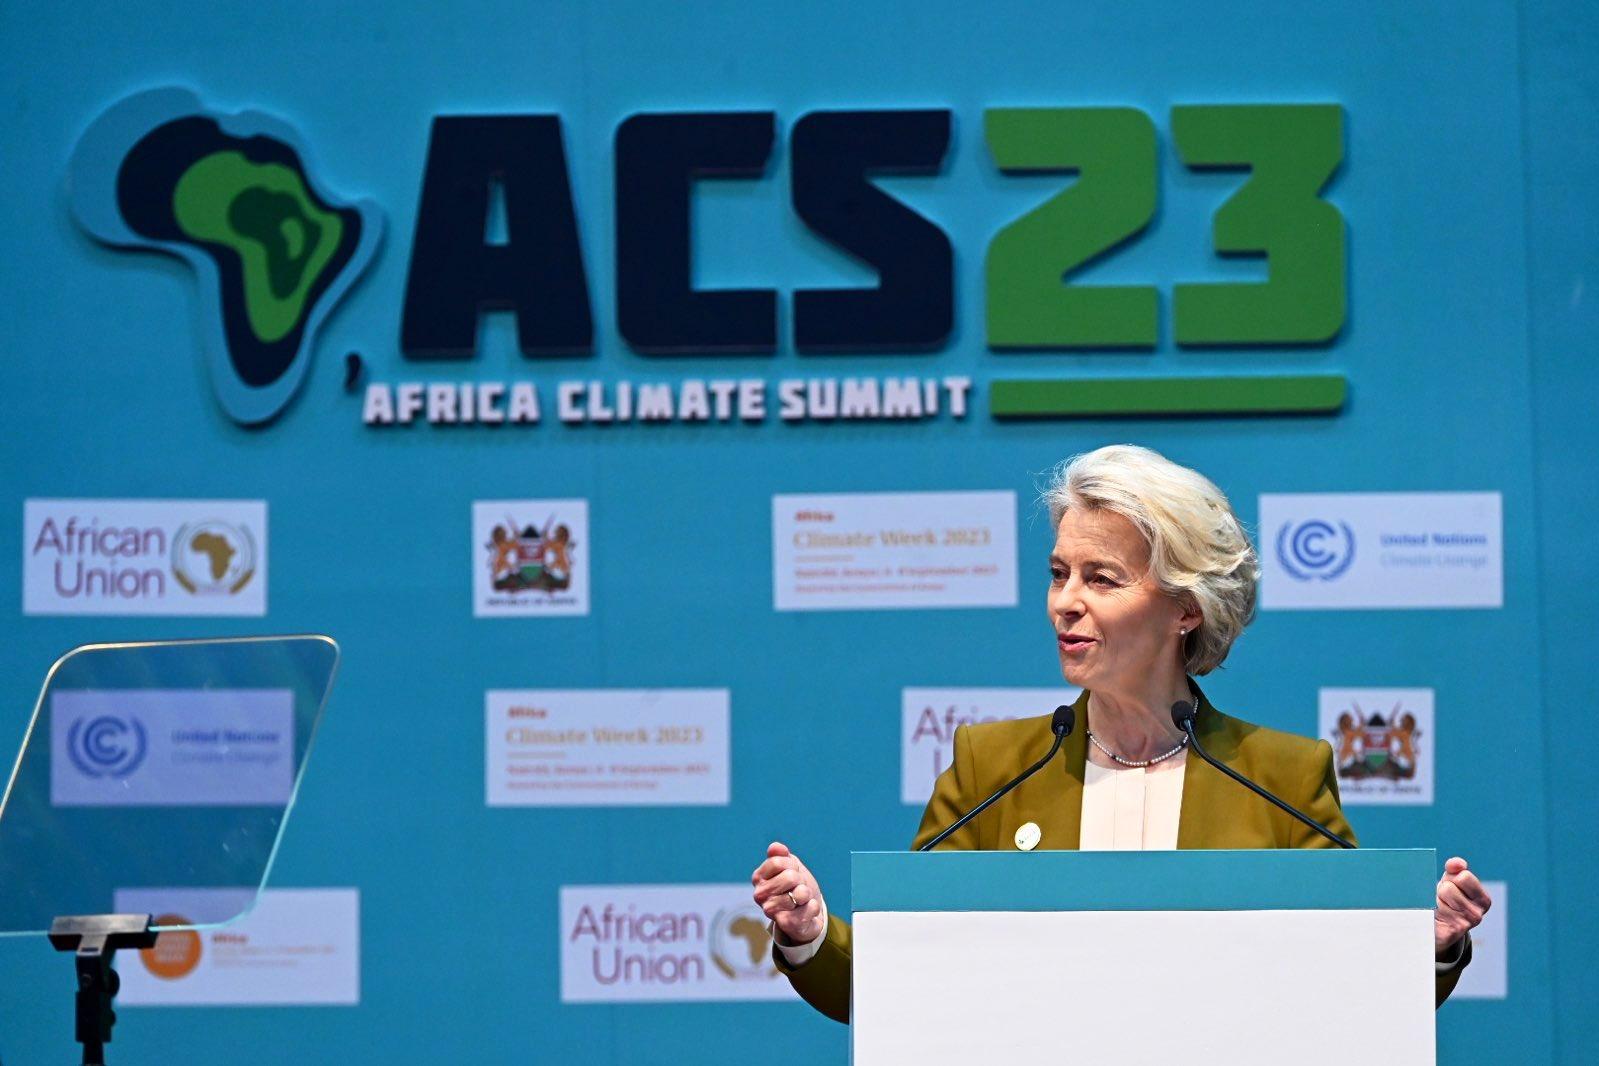 EU-Africa, von der Leyen: "Europe and Africa united against climate change"